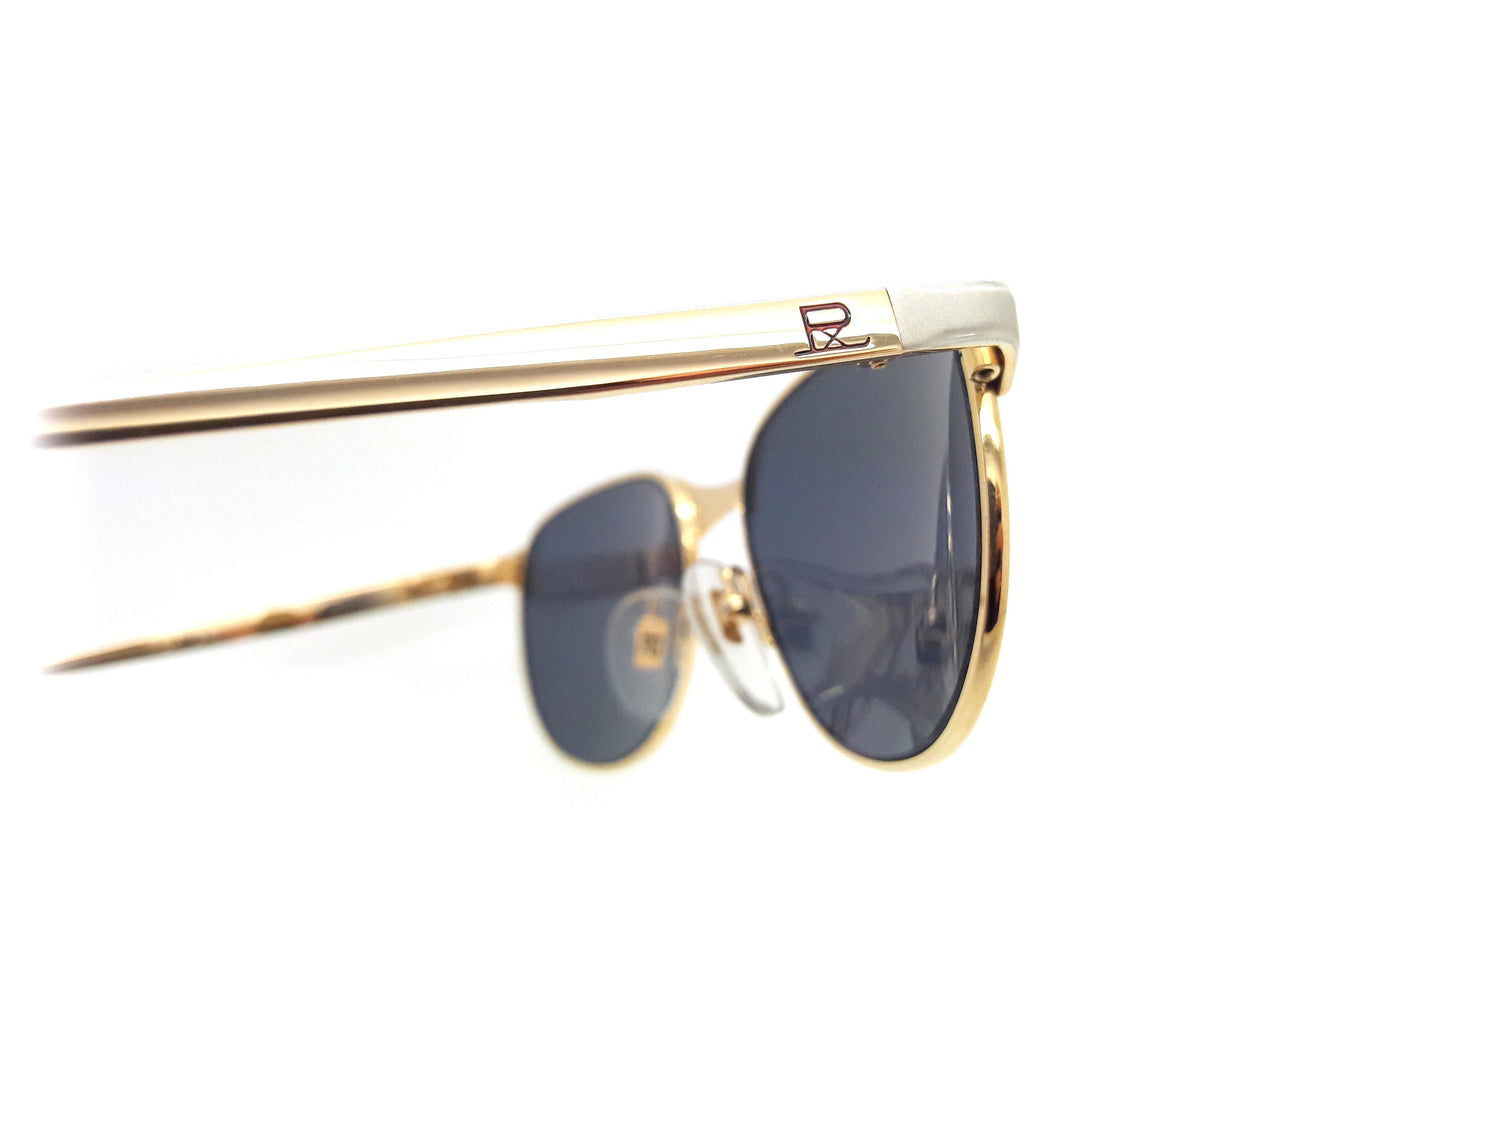 Vuarnet Pouilloux Ref 041 Vintage Sunglasses – Ed & Sarna Vintage Eyewear